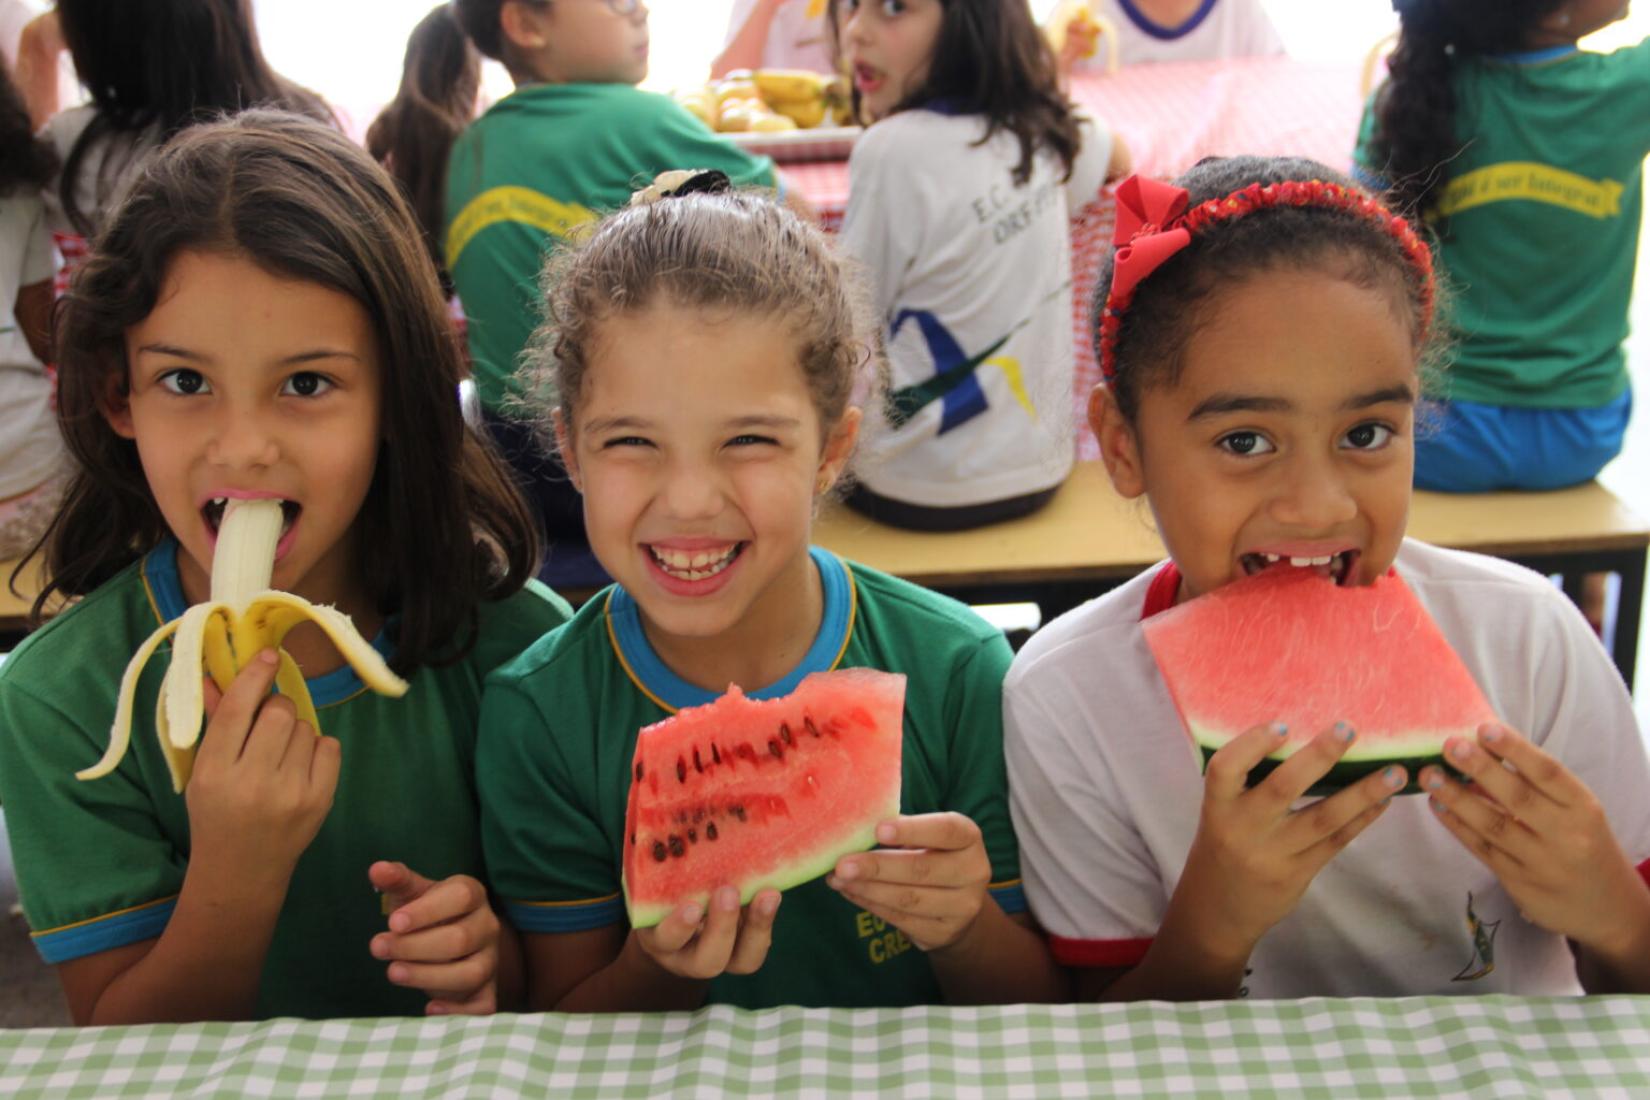 A metodologia da visita inclui uma série de vídeos e materiais escritos que simulam uma imersão no Programa Nacional de Alimentação Escolar (PNAE) brasileiro. 